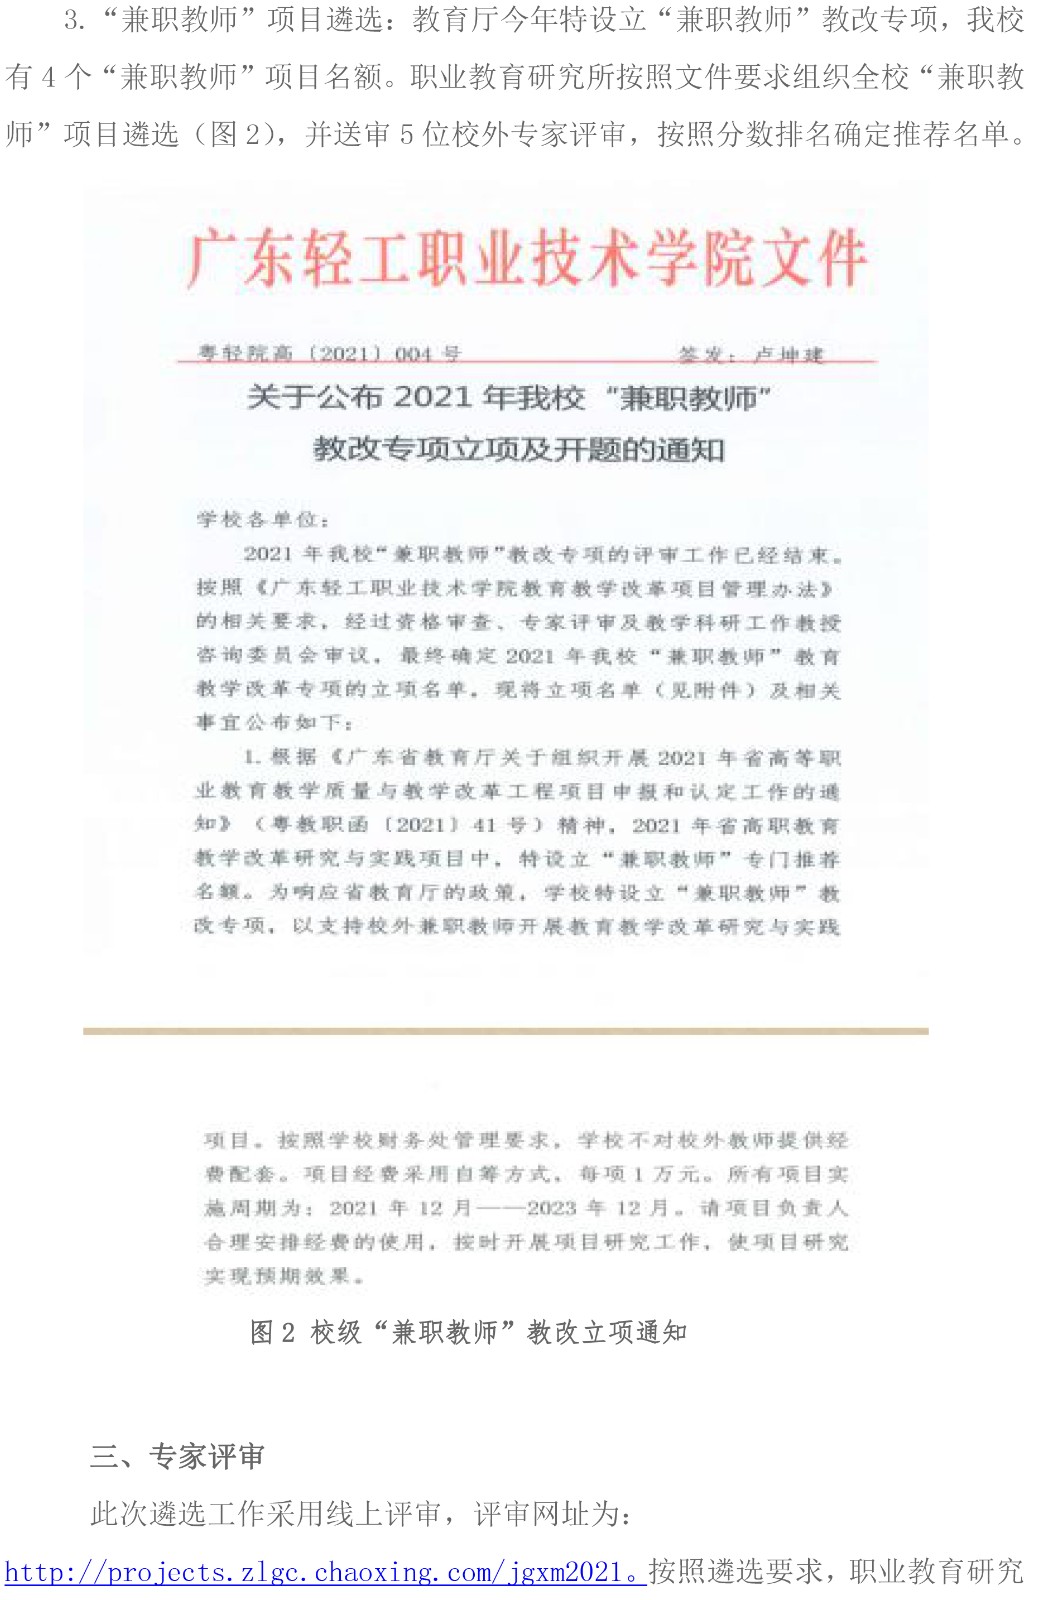 附件1：广东轻工职业技术学院关于2021年省质量工程项目的推荐遴选工作总结报告-2.jpg